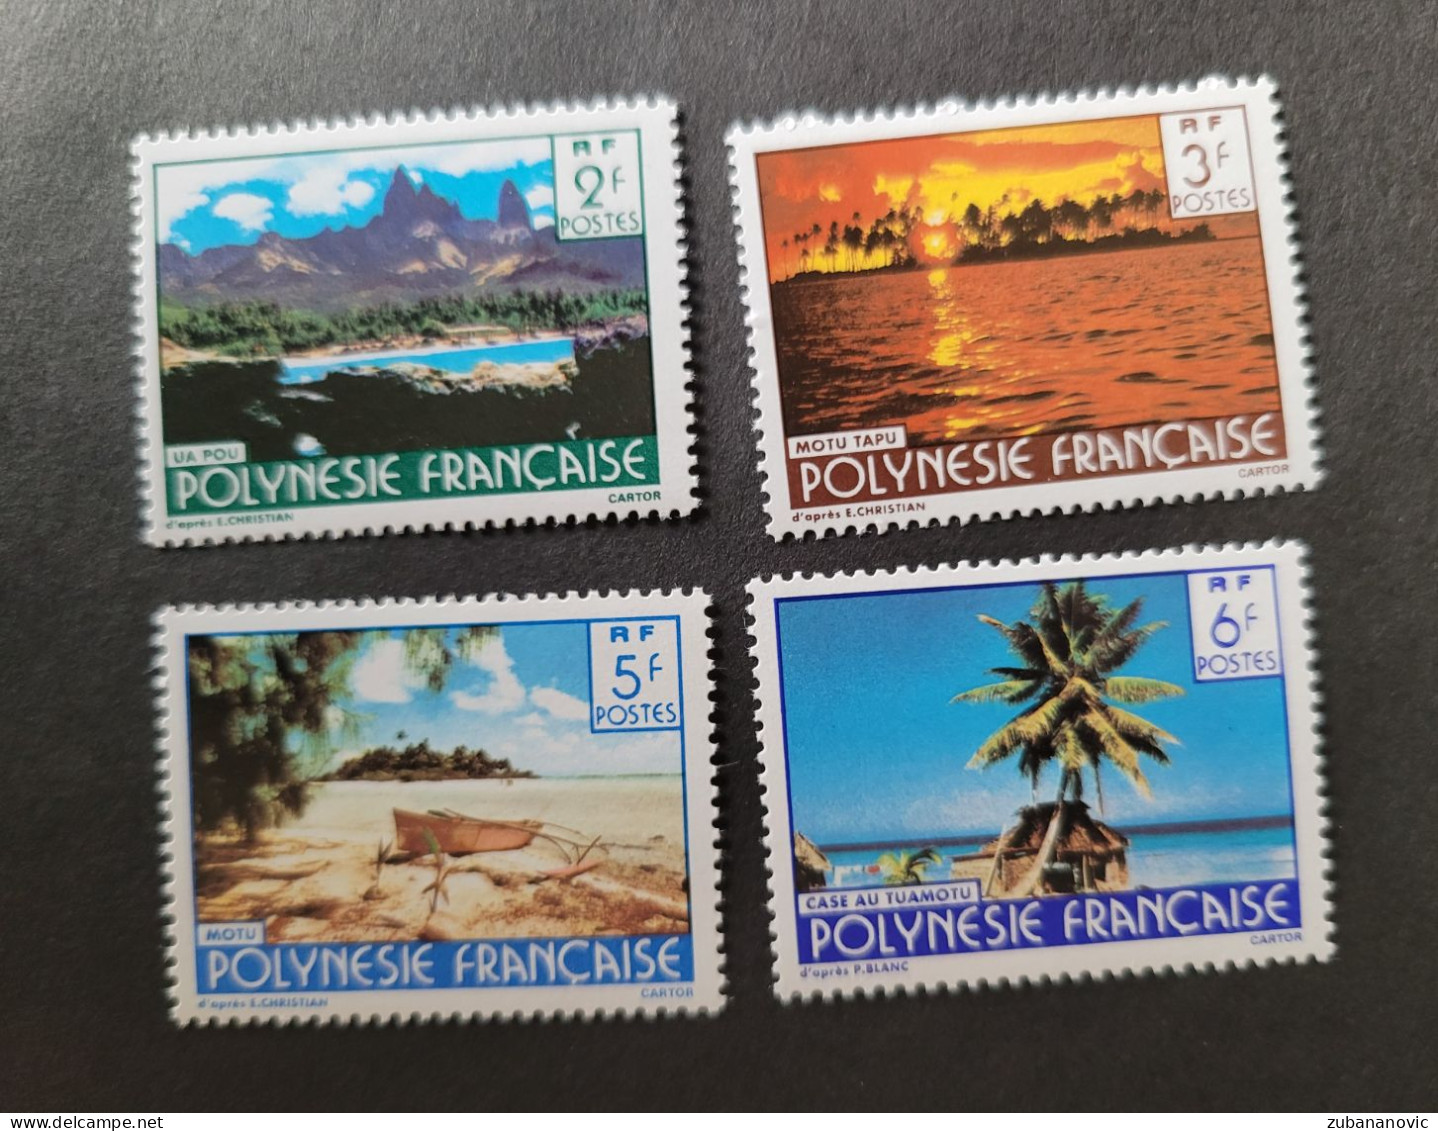 Polynesie Francaise 1979 - Ongebruikt